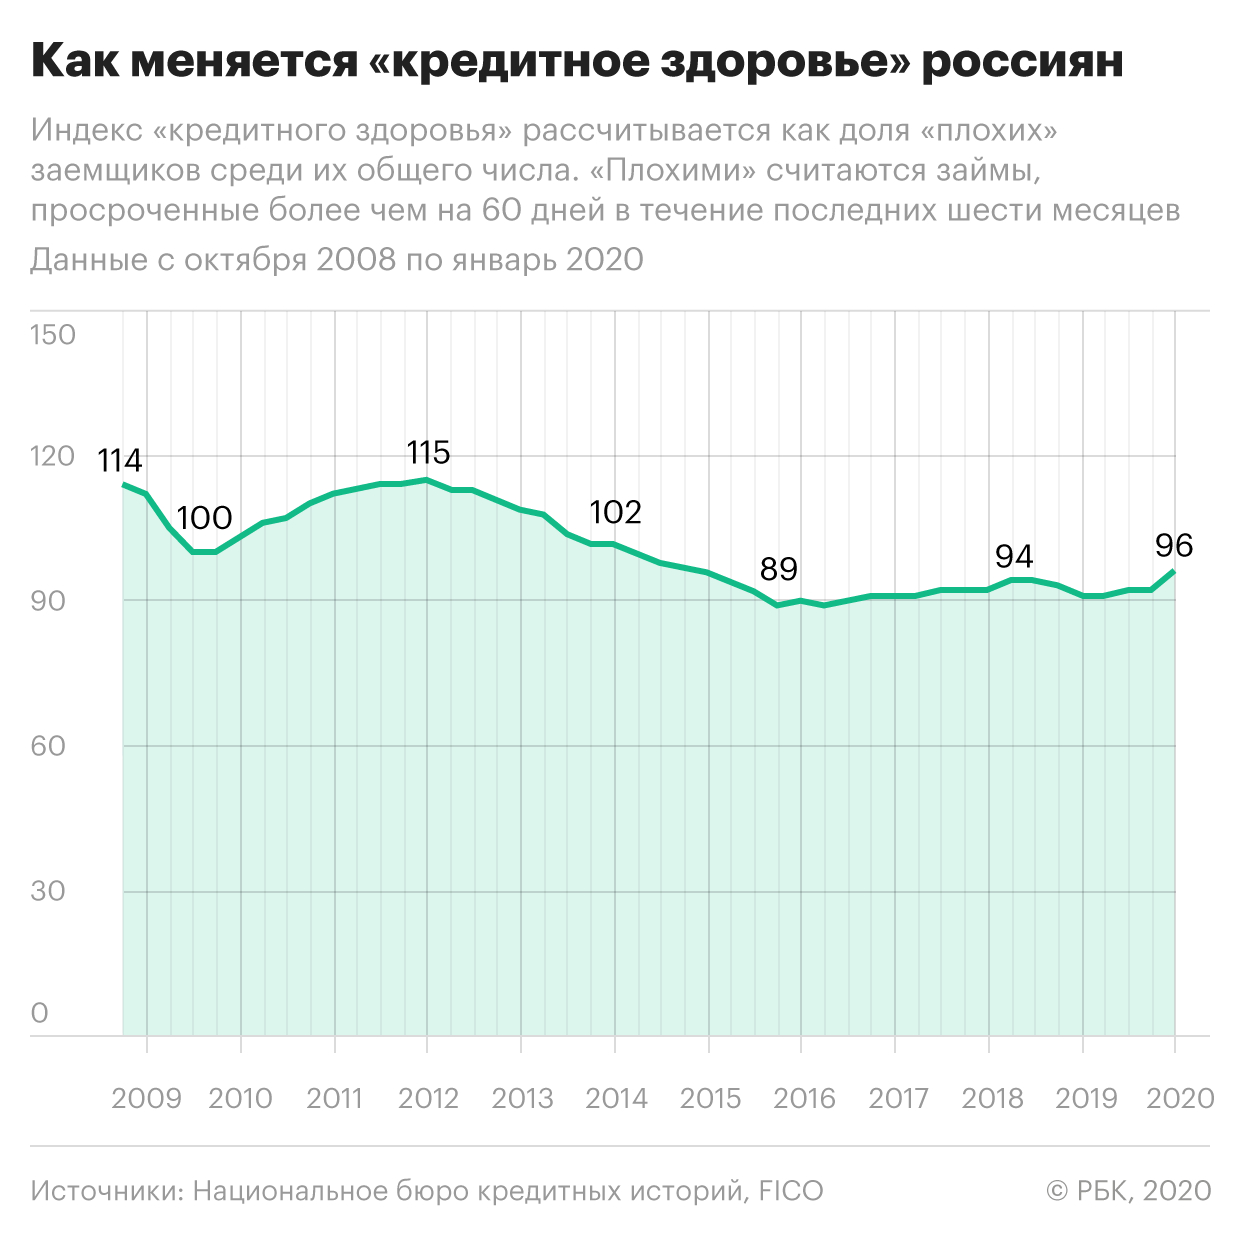 «Кредитное здоровье» россиян вернулось к докризисному уровню